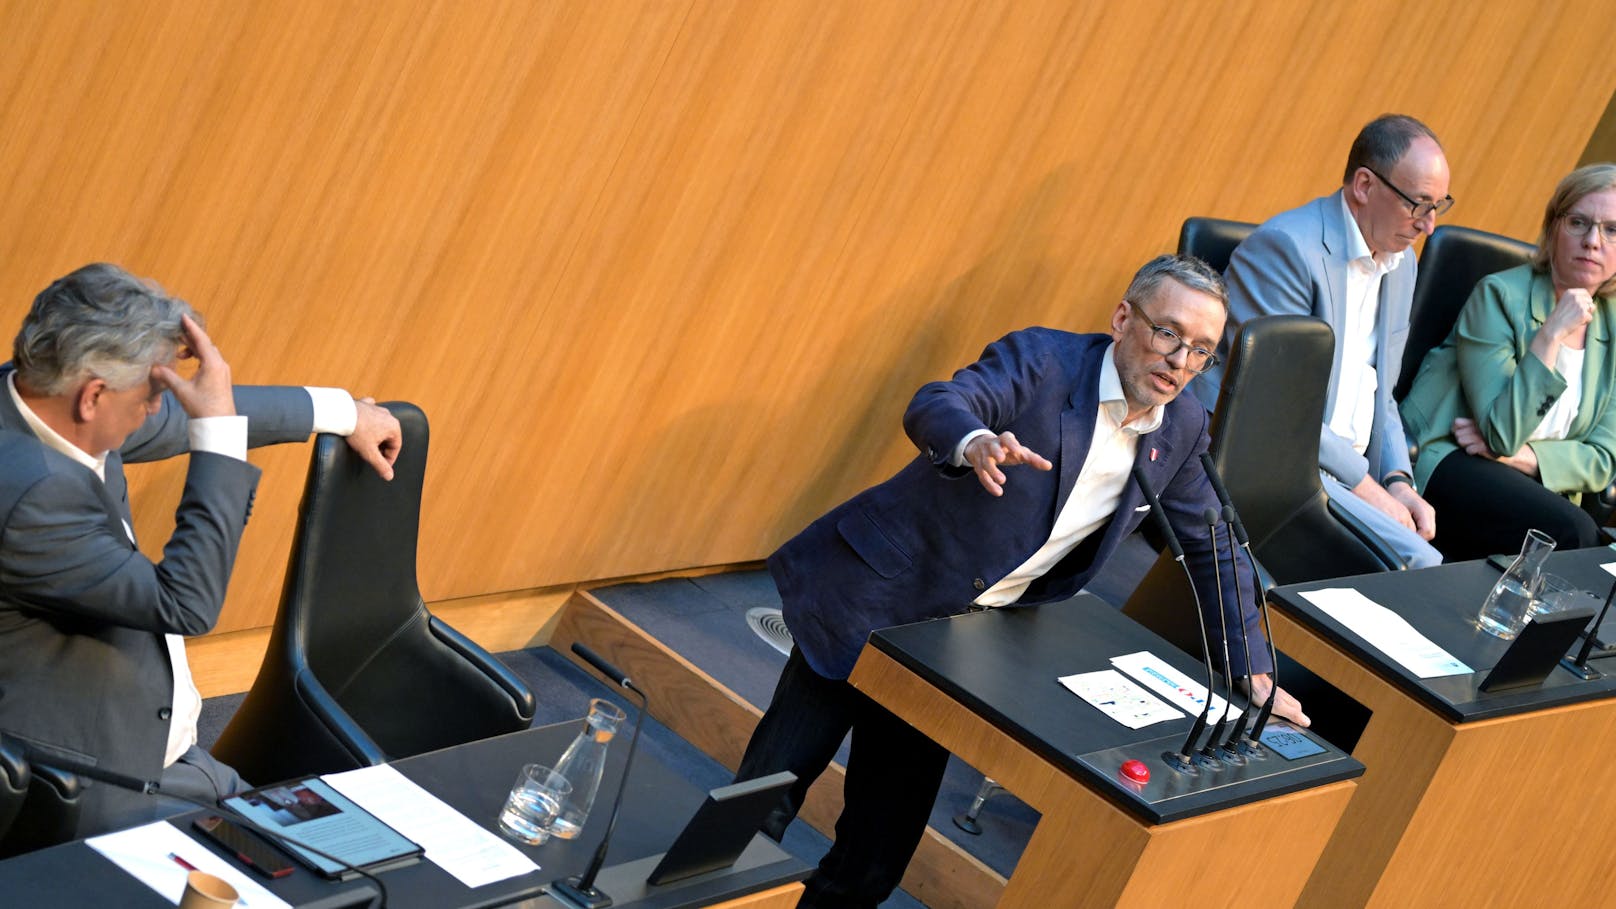 In seiner Rede attackierte FPÖ-Chef Kickl die grüne Ministerin scharf.